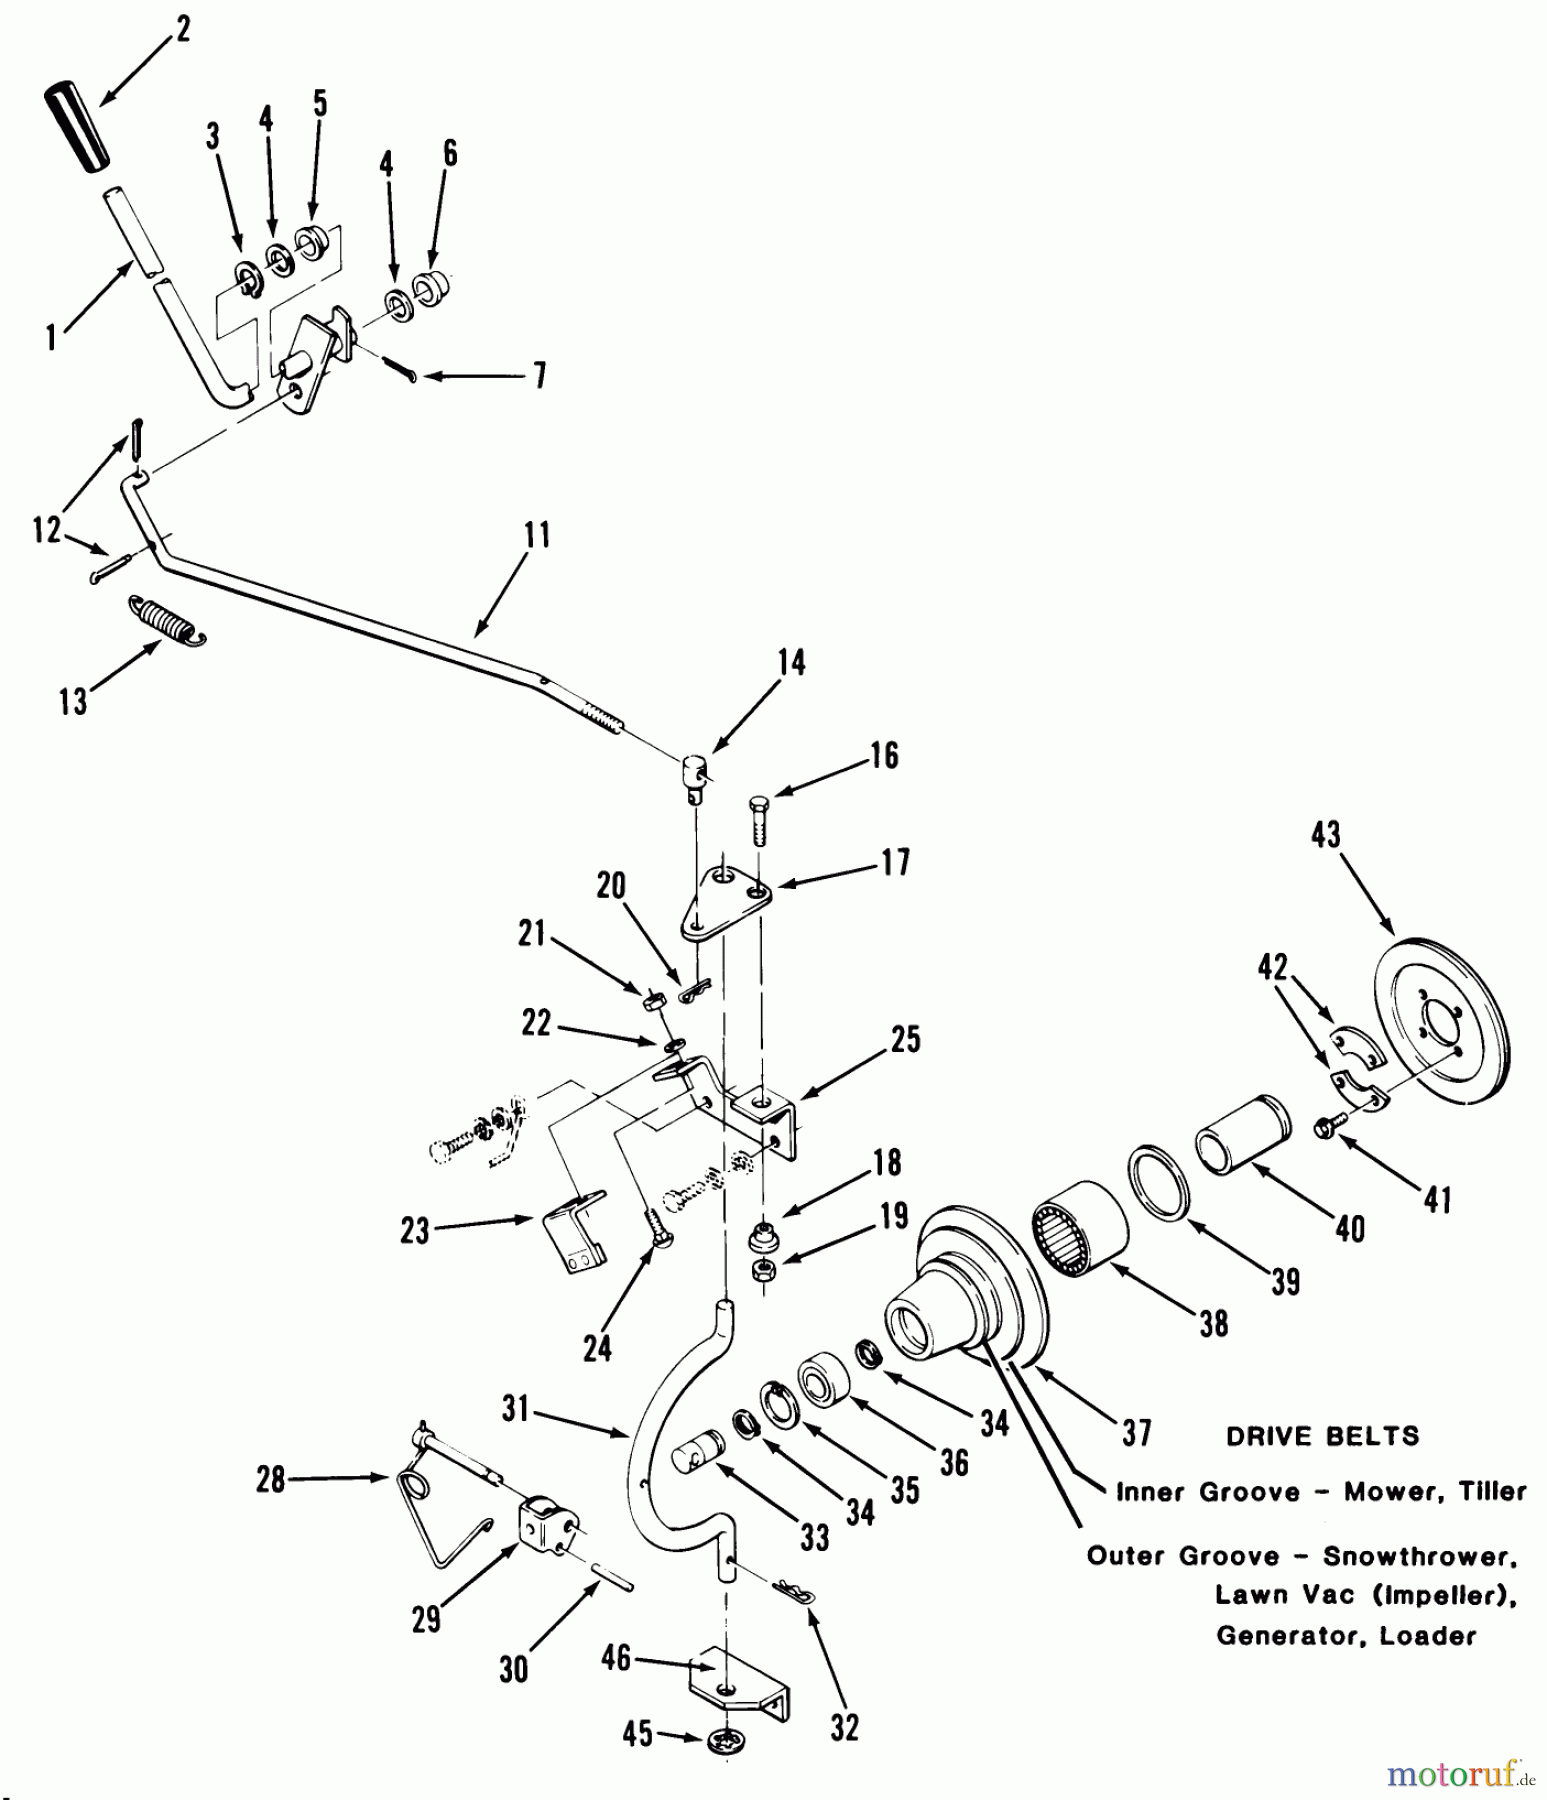  Toro Neu Mowers, Lawn & Garden Tractor Seite 1 31-17KE01 (417-A) - Toro 417-A Garden Tractor, 1985 PTO CLUTCH AND CONTROL